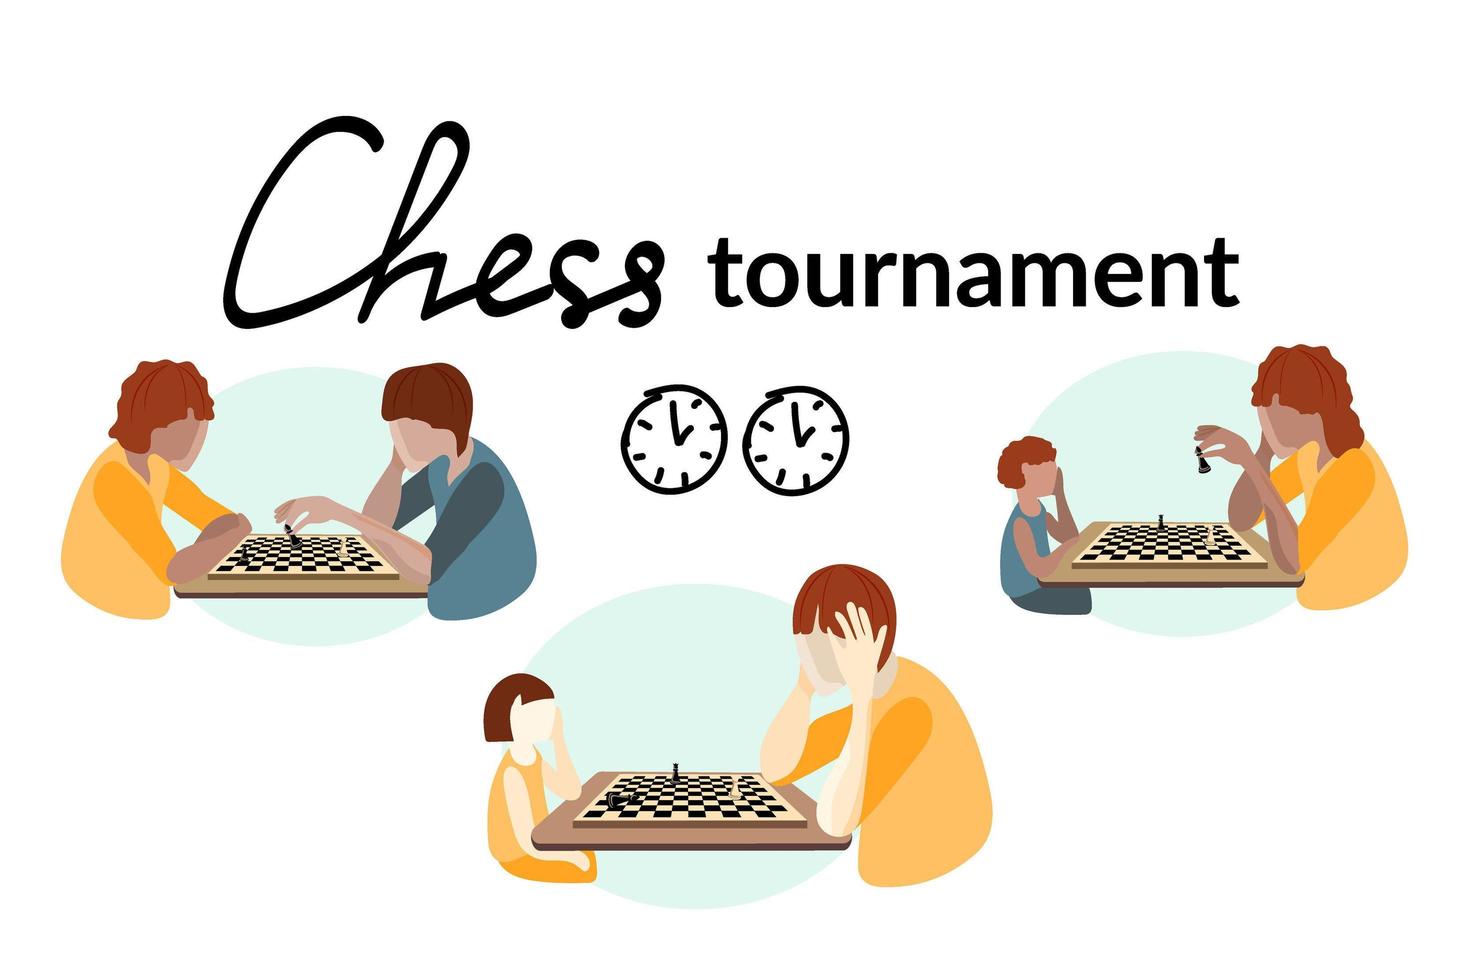 il concetto di un torneo di scacchi. persone di diverse età e razze giocano a scacchi. scacchiera e i pezzi su di essa. vettore in stile piatto.